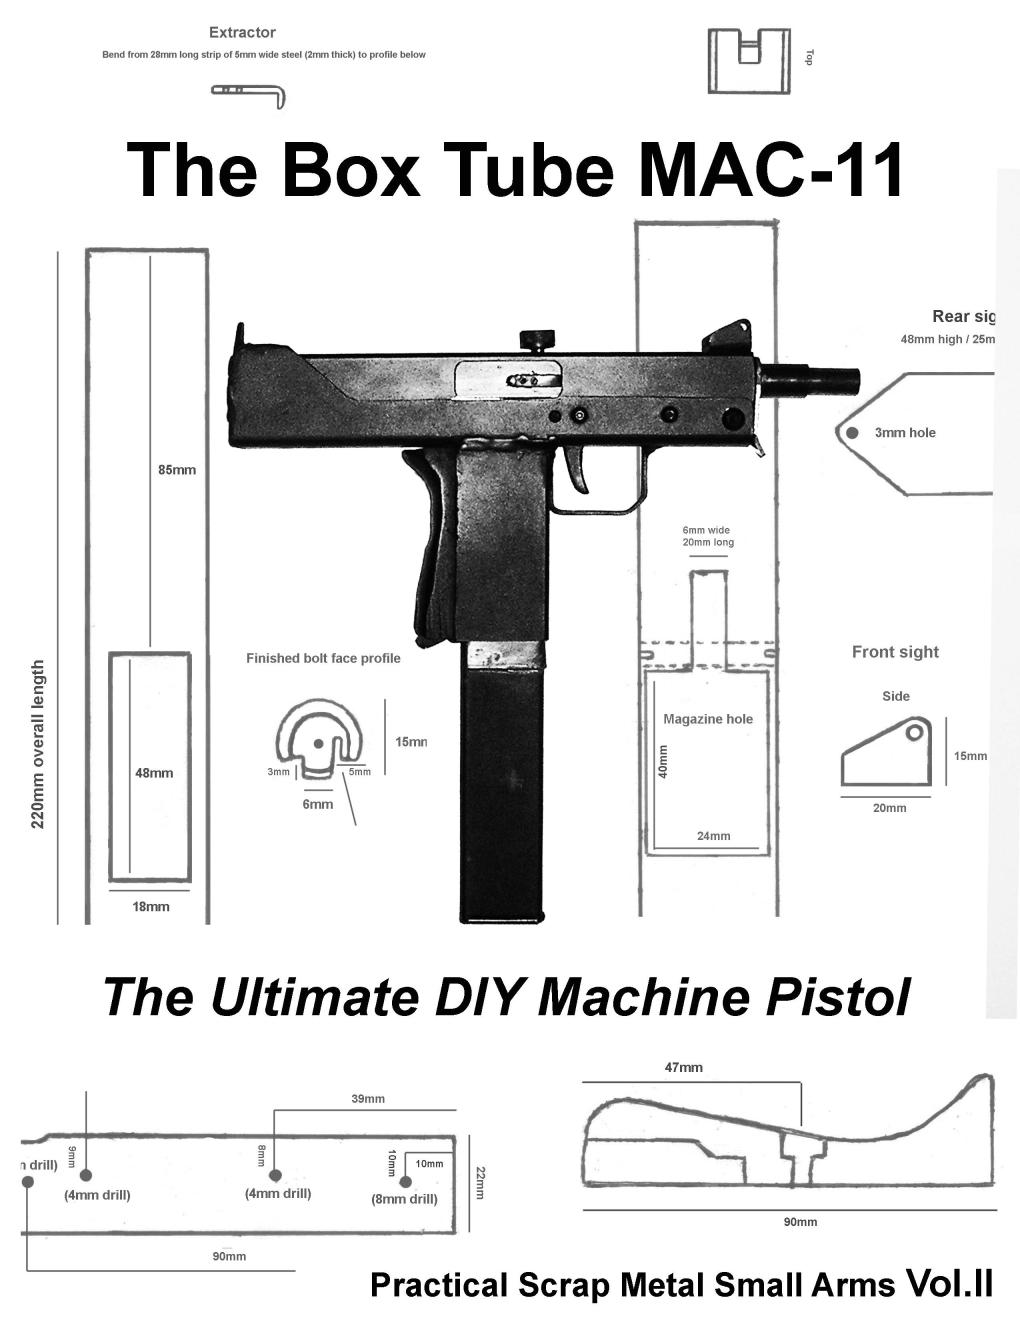 The Box Tube MAC-11